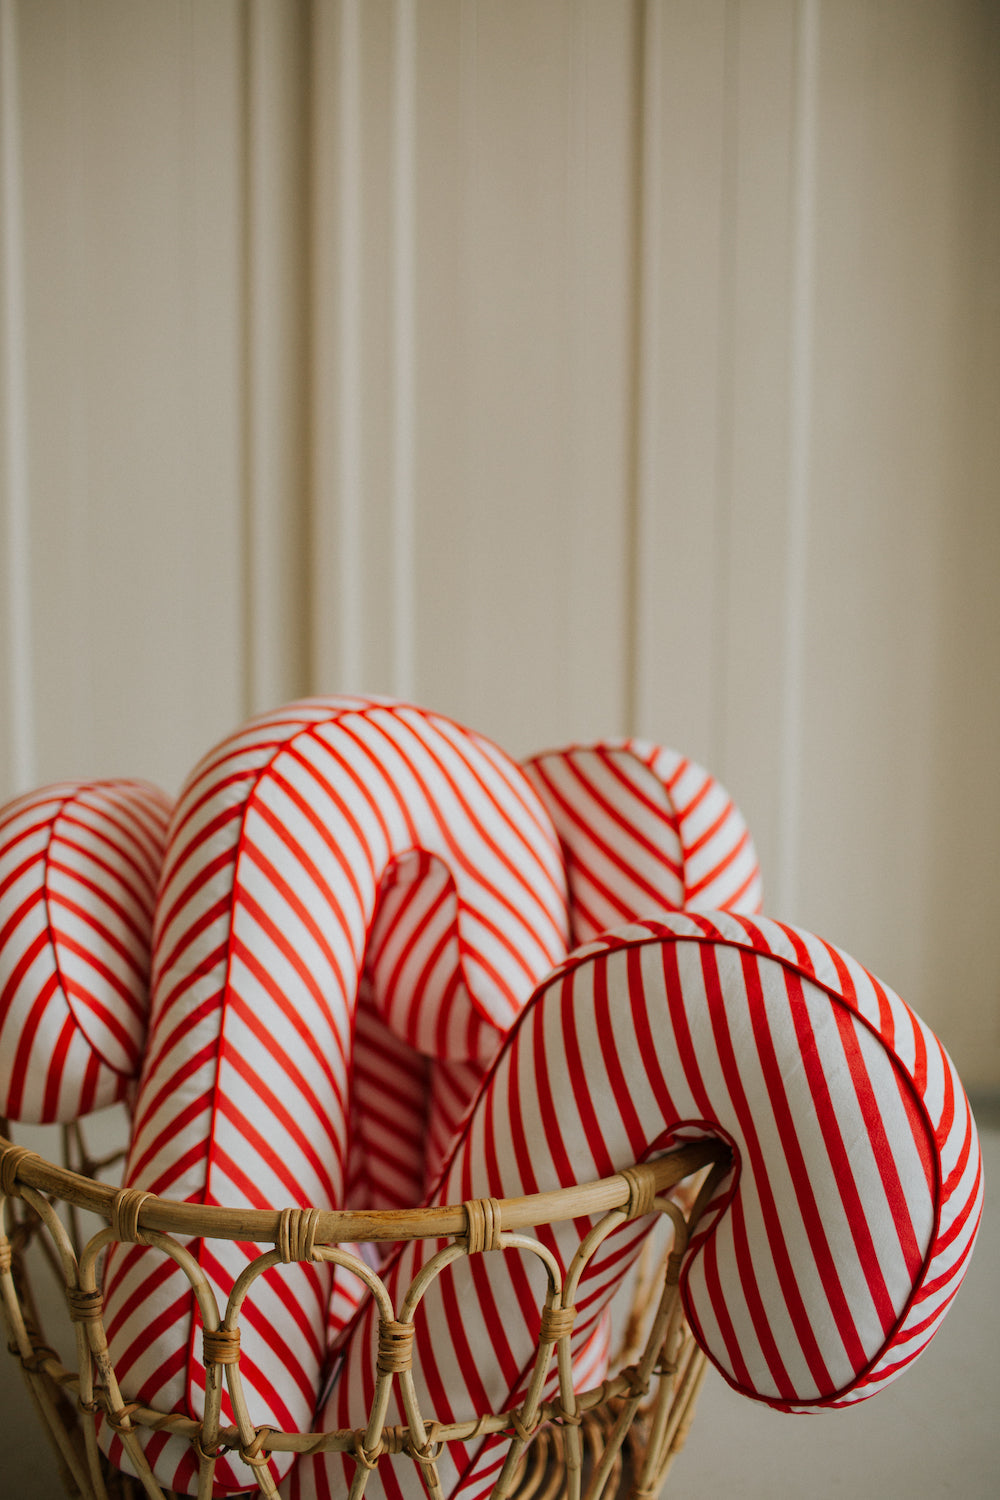 świąteczna poduszka laska w biało czerwone paski od Bettys Home cztery poduszki laski w koszyku 